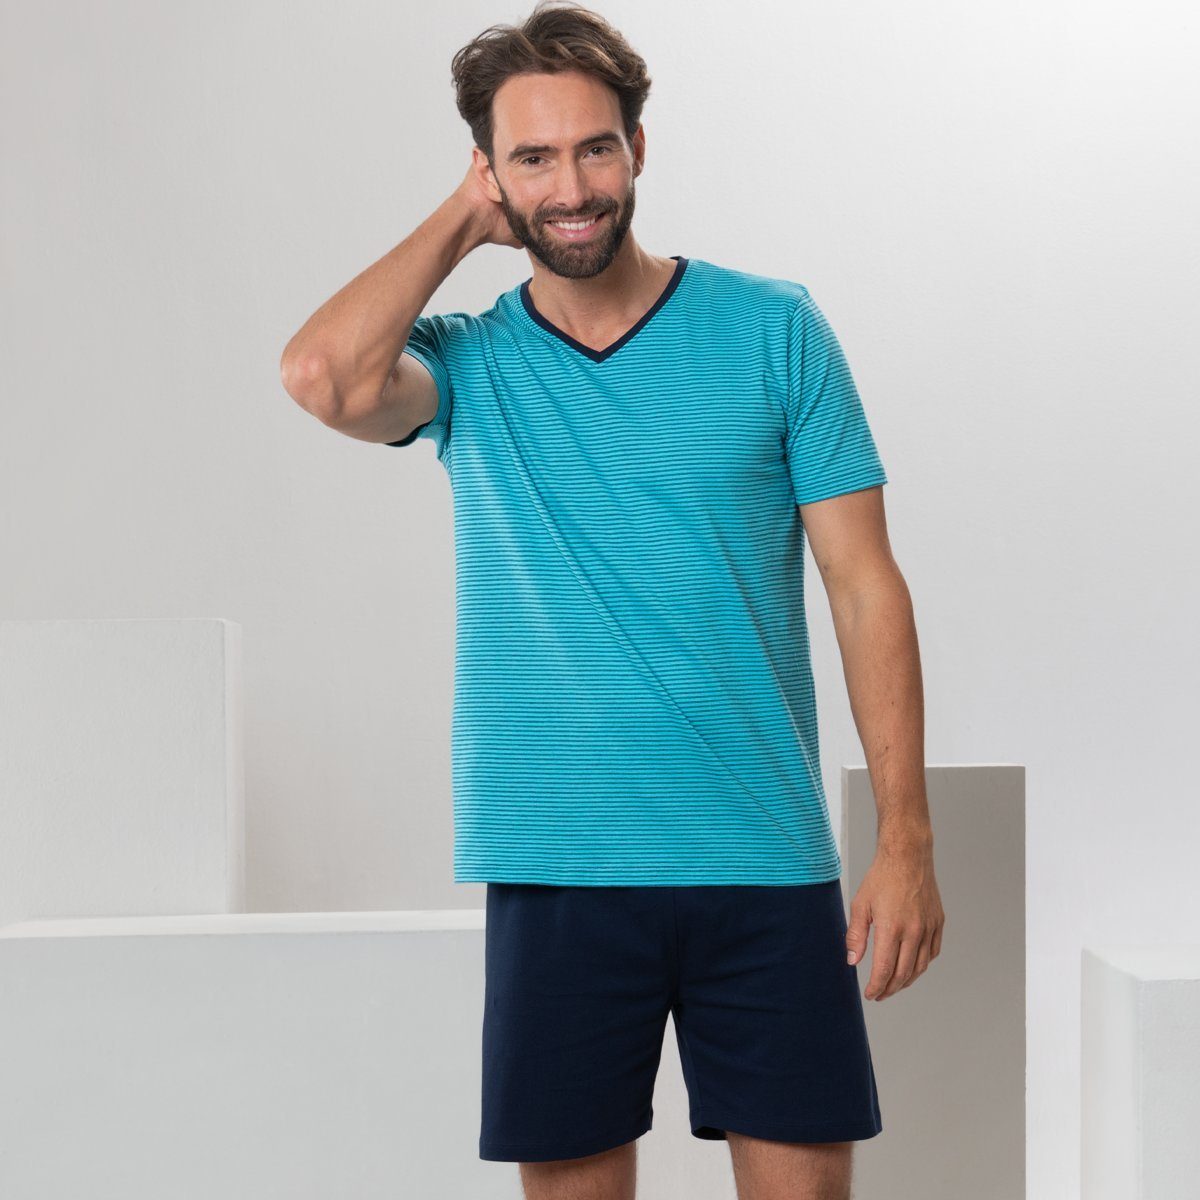 Sommerliche CRAFTS Leichtigkeit LIVING abgestimmten Schlafanzug in Farbtönen CARL Turquoise